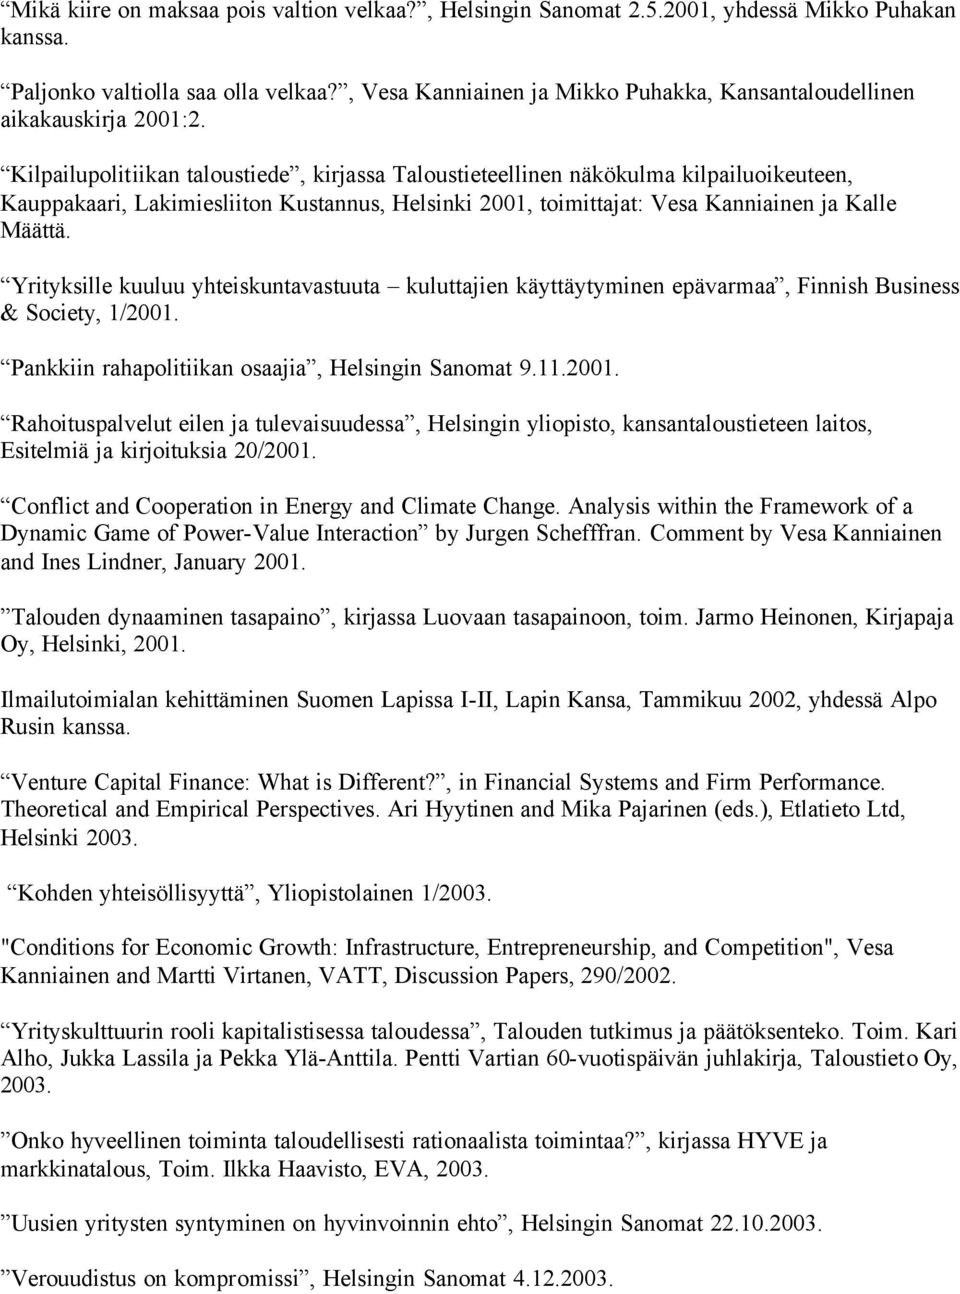 Kilpailupolitiikan taloustiede, kirjassa Taloustieteellinen näkökulma kilpailuoikeuteen, Kauppakaari, Lakimiesliiton Kustannus, Helsinki 2001, toimittajat: Vesa Kanniainen ja Kalle Määttä.